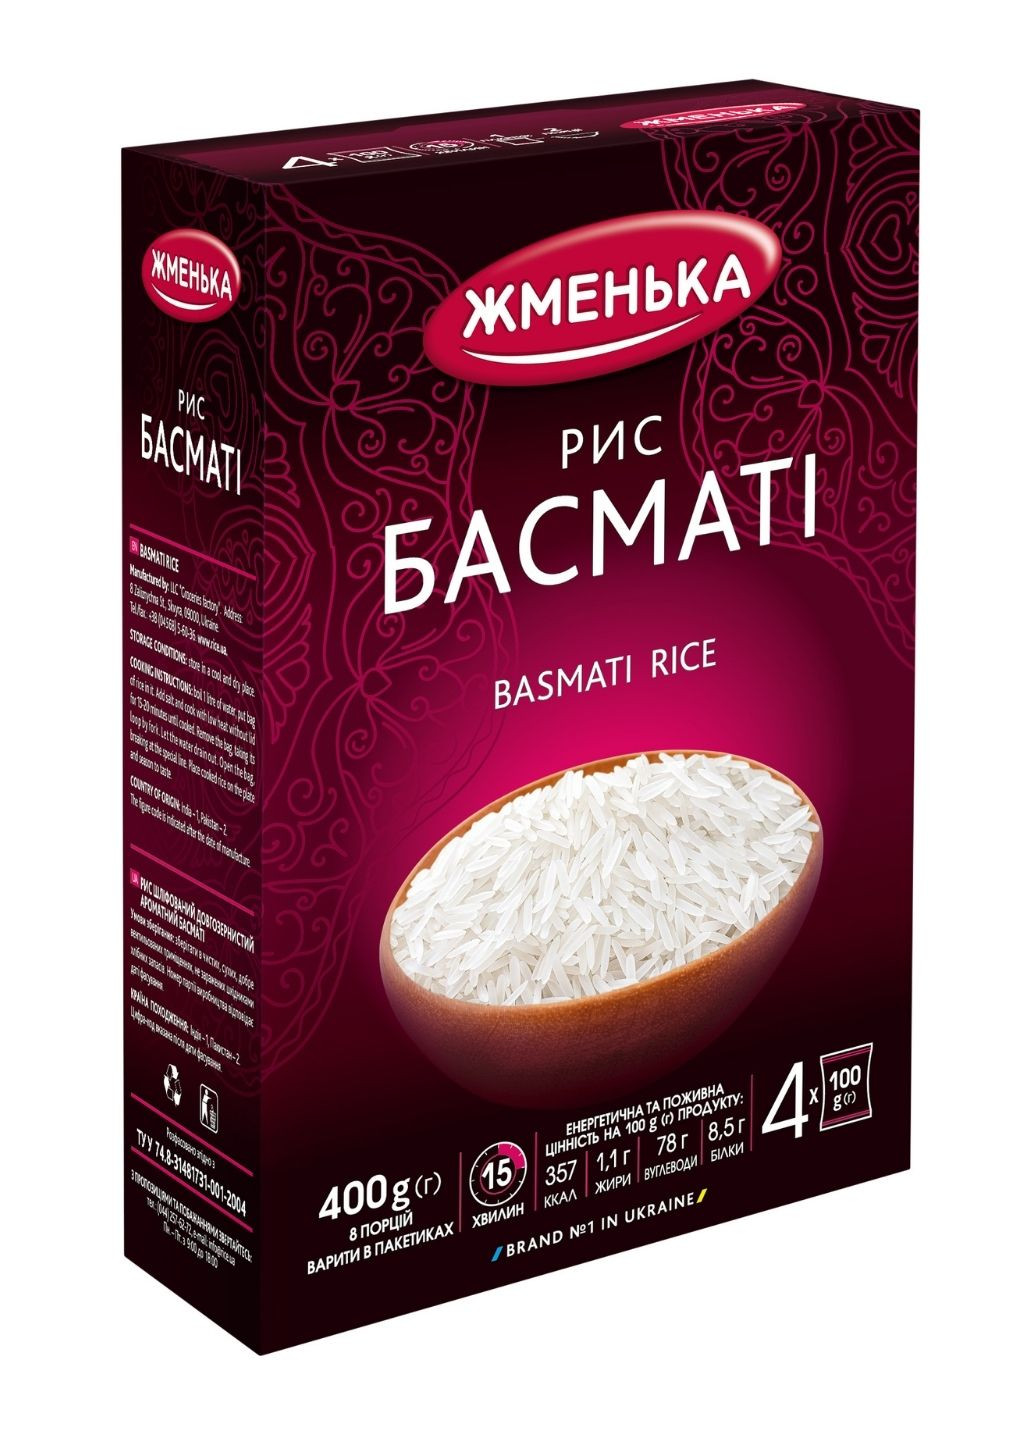 Рис Басматі в пакетиках для варіння 4 шт х 100 г Жменька (244010492)